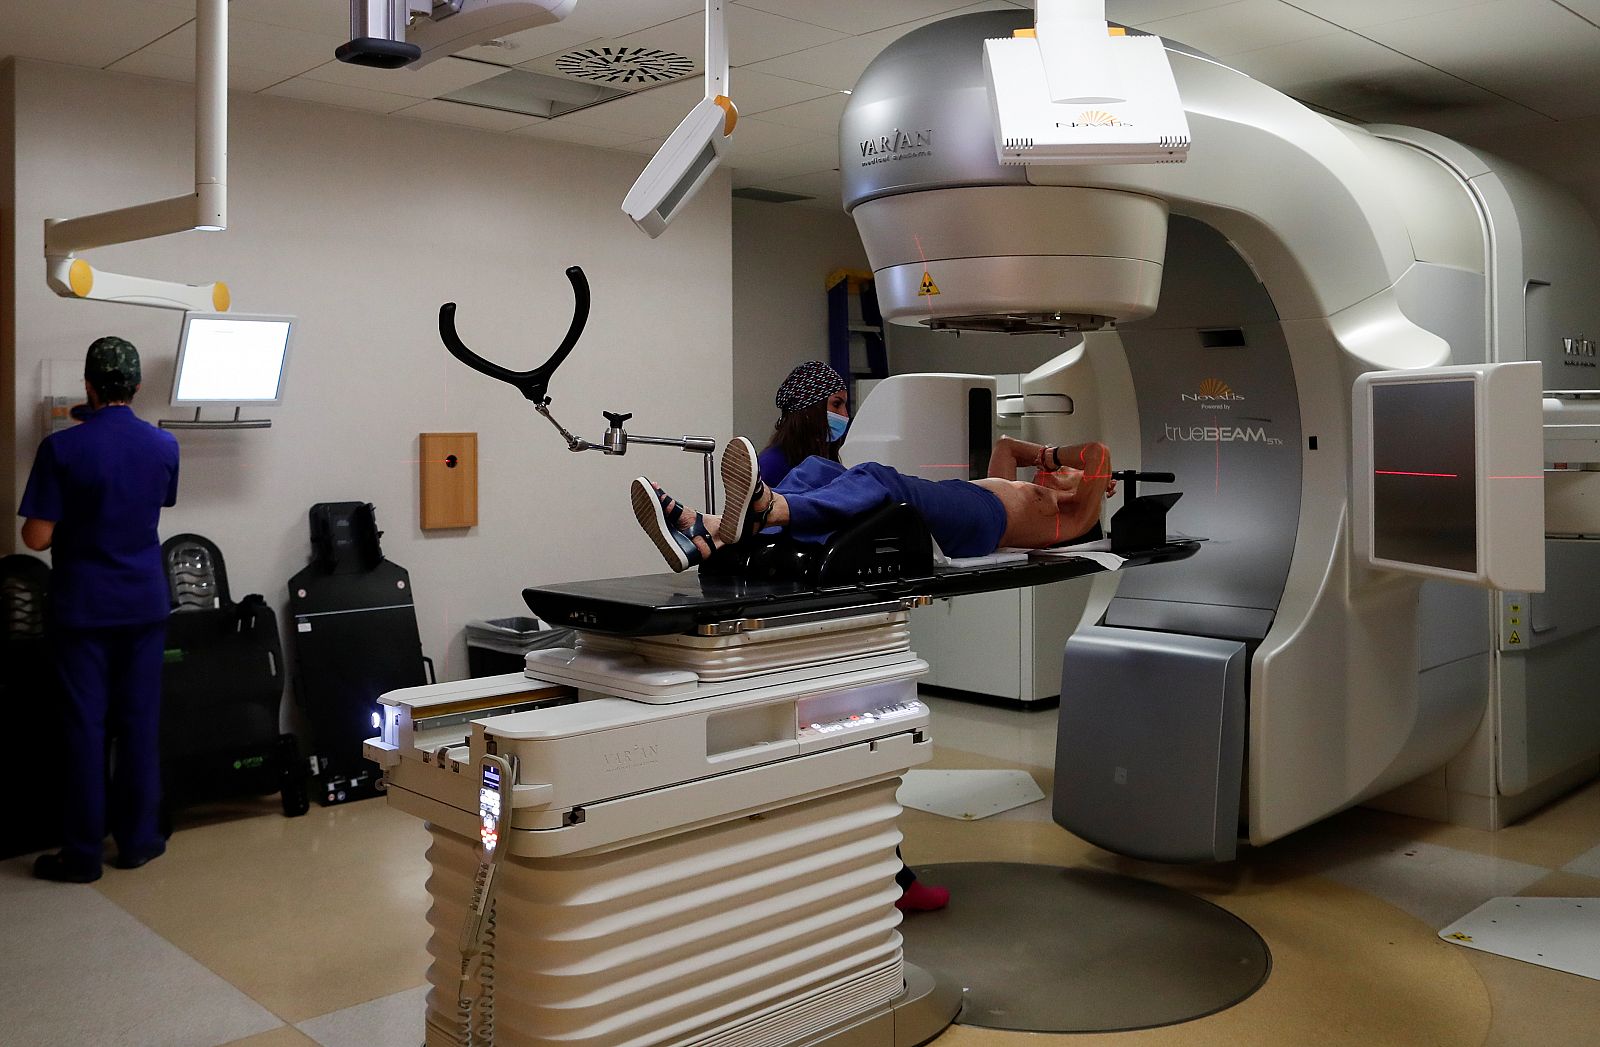 Un paciente es tratado en una sala de radioterapia.